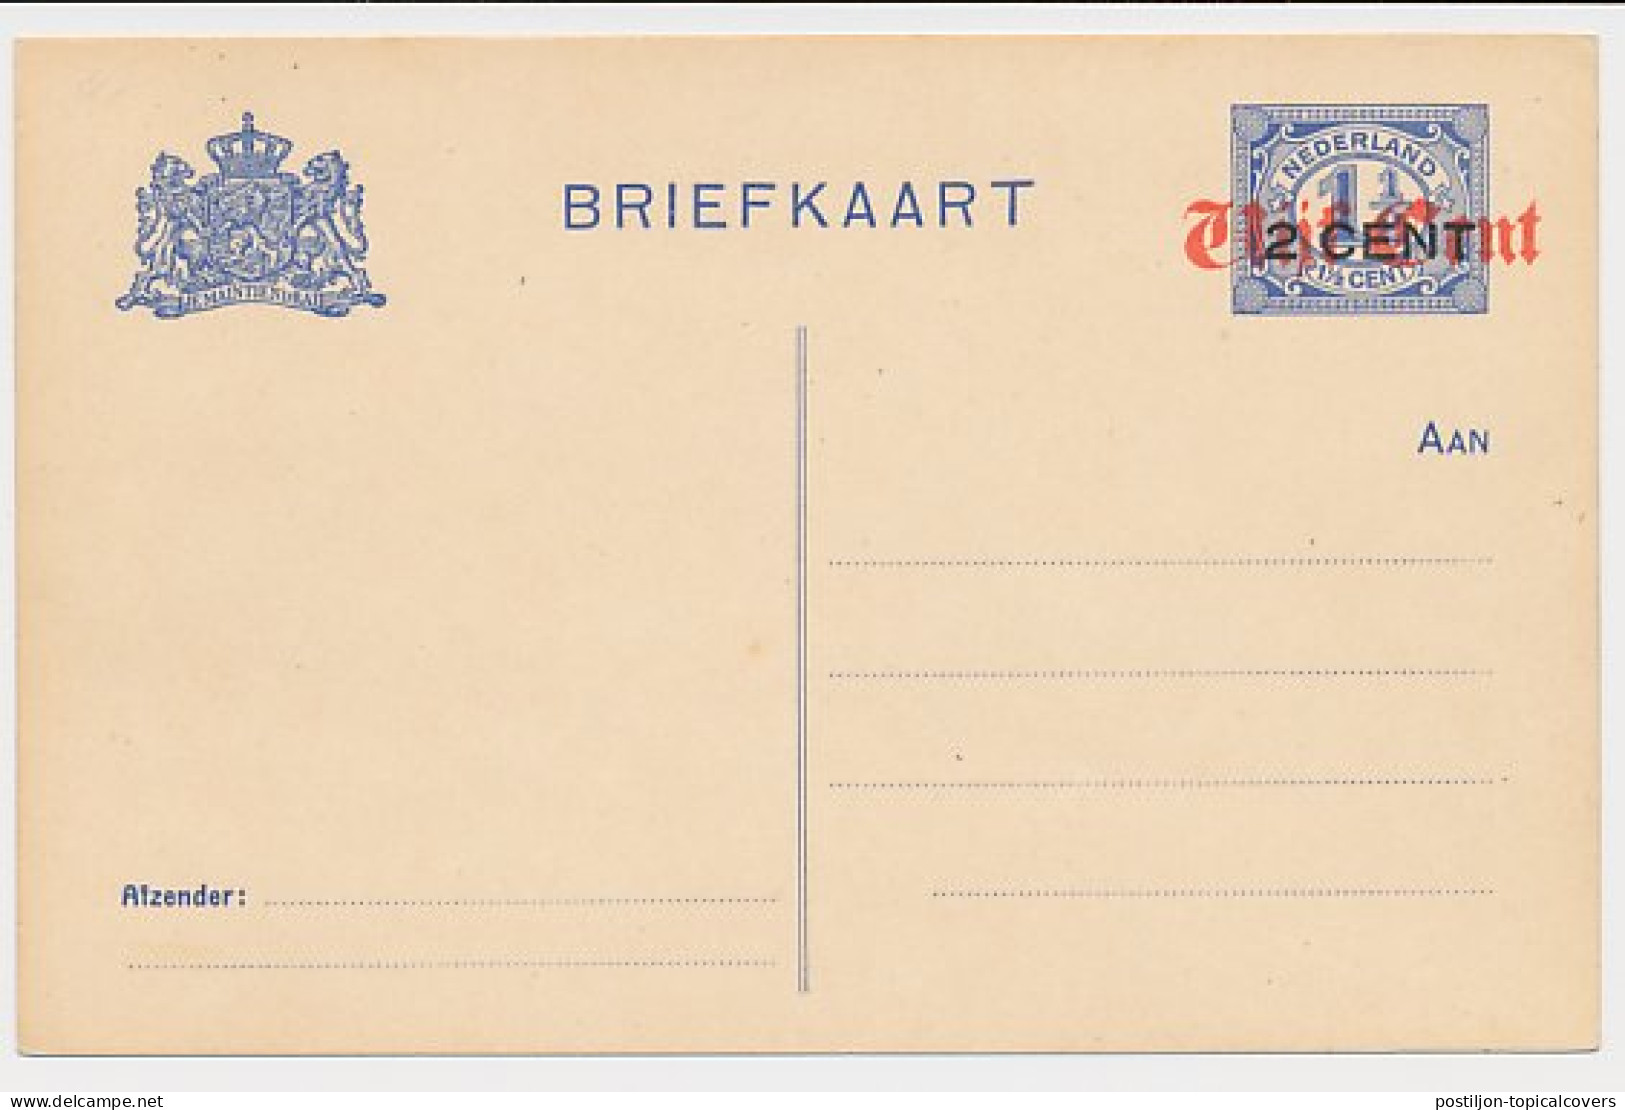 Briefkaart G. 116 I - Postwaardestukken